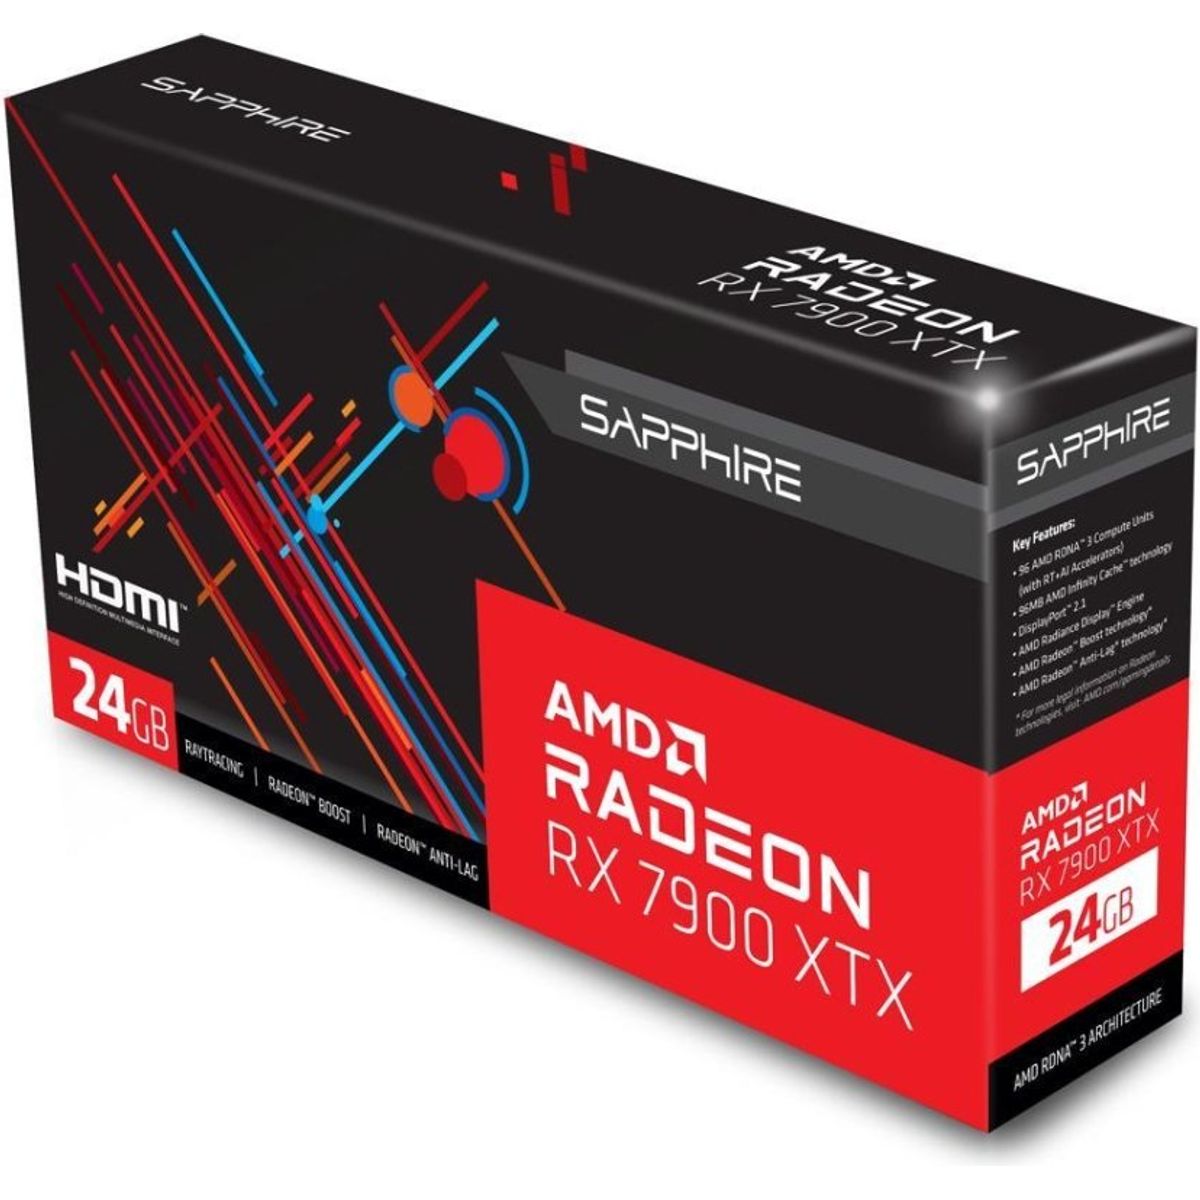 SAPPHIRE Radeon RX 7900 XTX 24GB GDDR6 PCI Express 4.0 Video Card 21322-01-20G - Video Cards & Adapters - Gamertech.shop